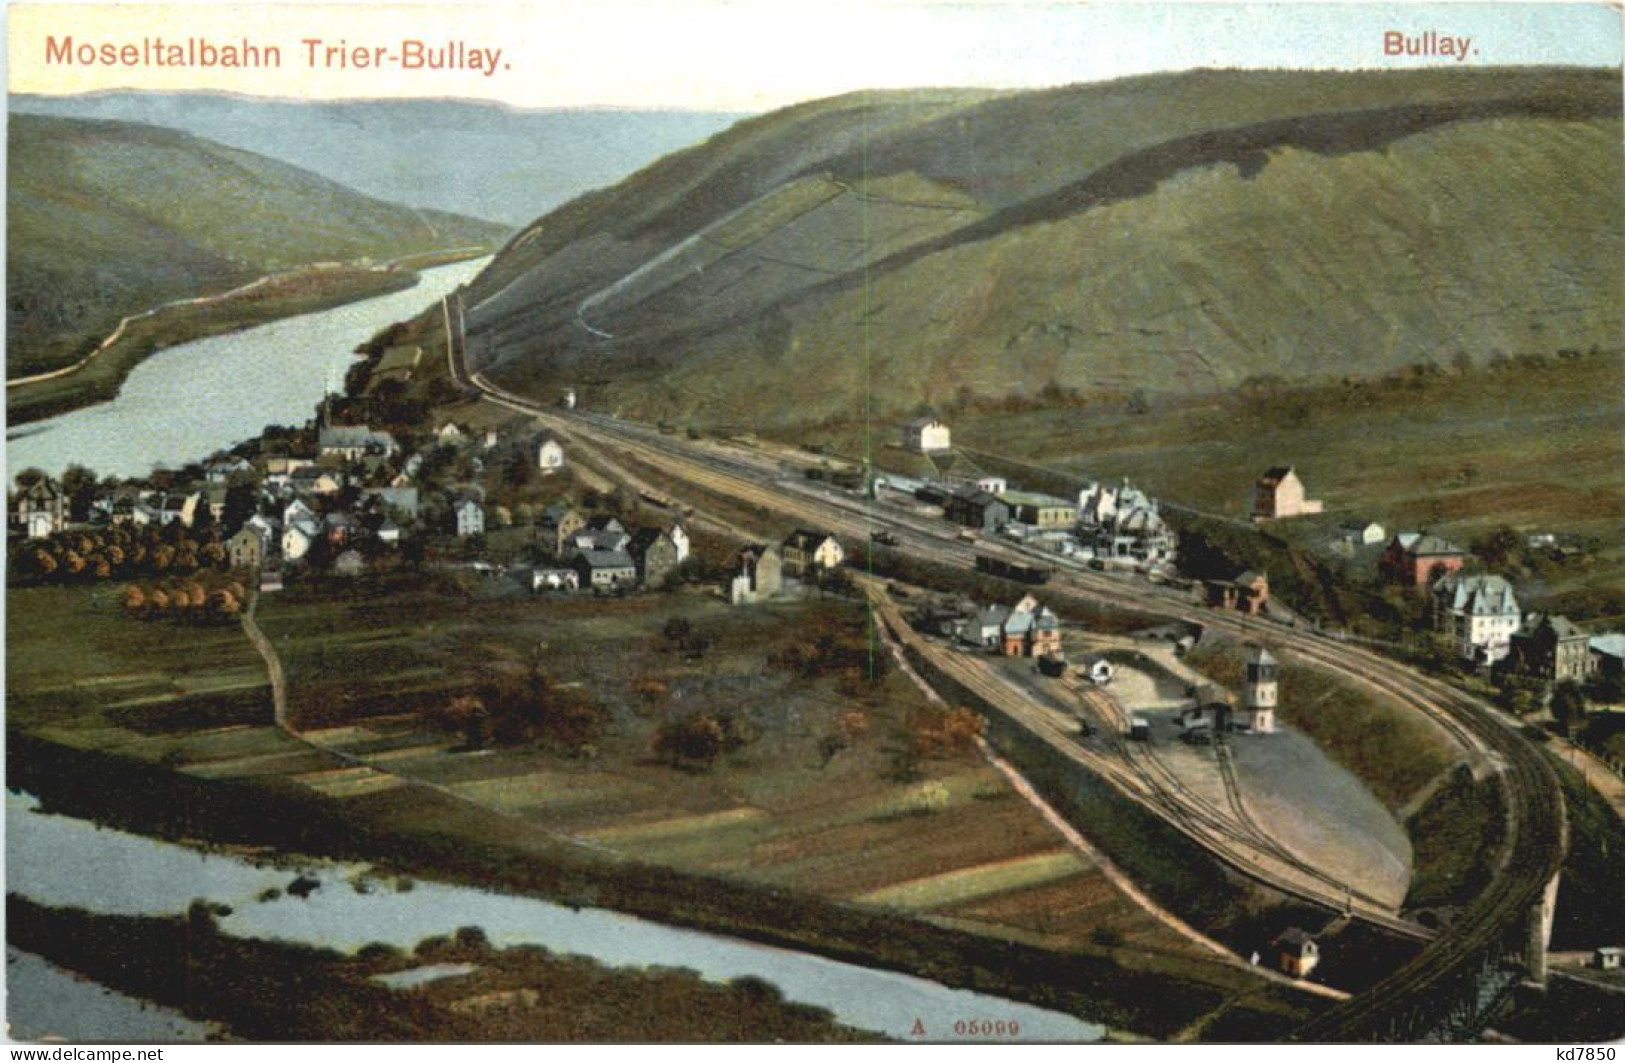 Moseltalbahn Trier-Bullay - Bullay - Alf-Bullay